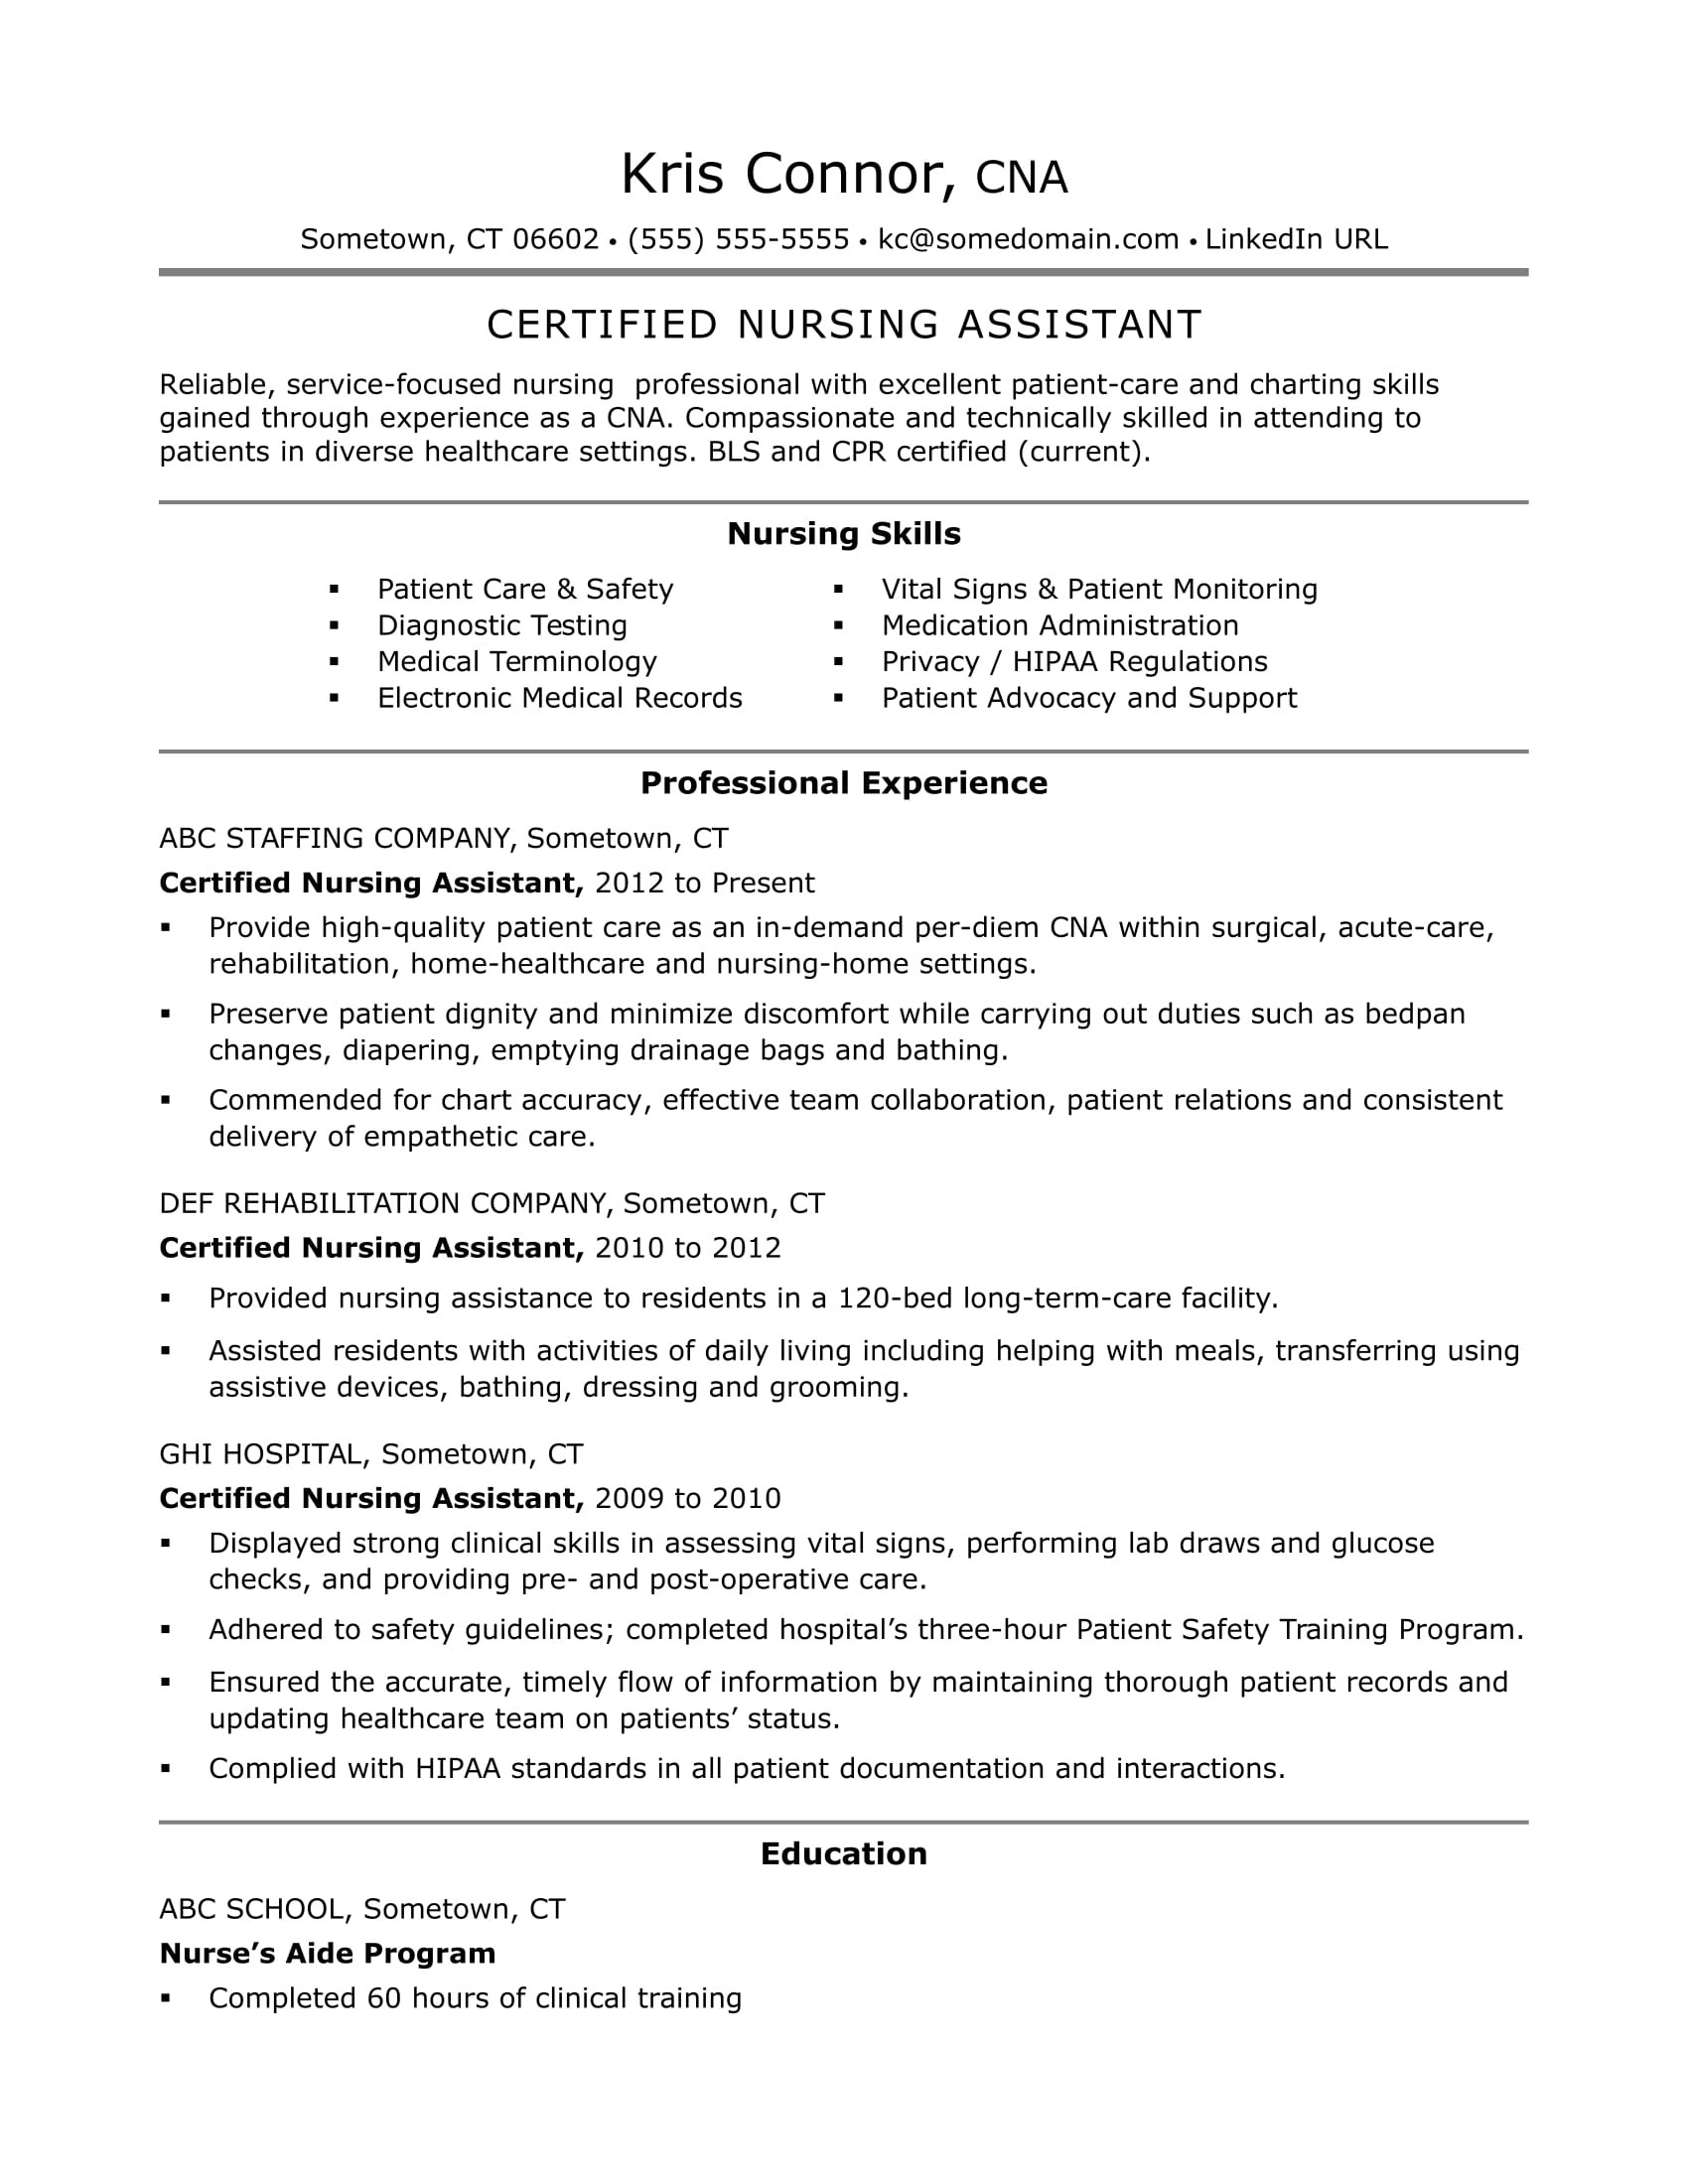 Sample Resume for Home Care Nurse Cna Resume Examples: Skills for Cnas Monster.com